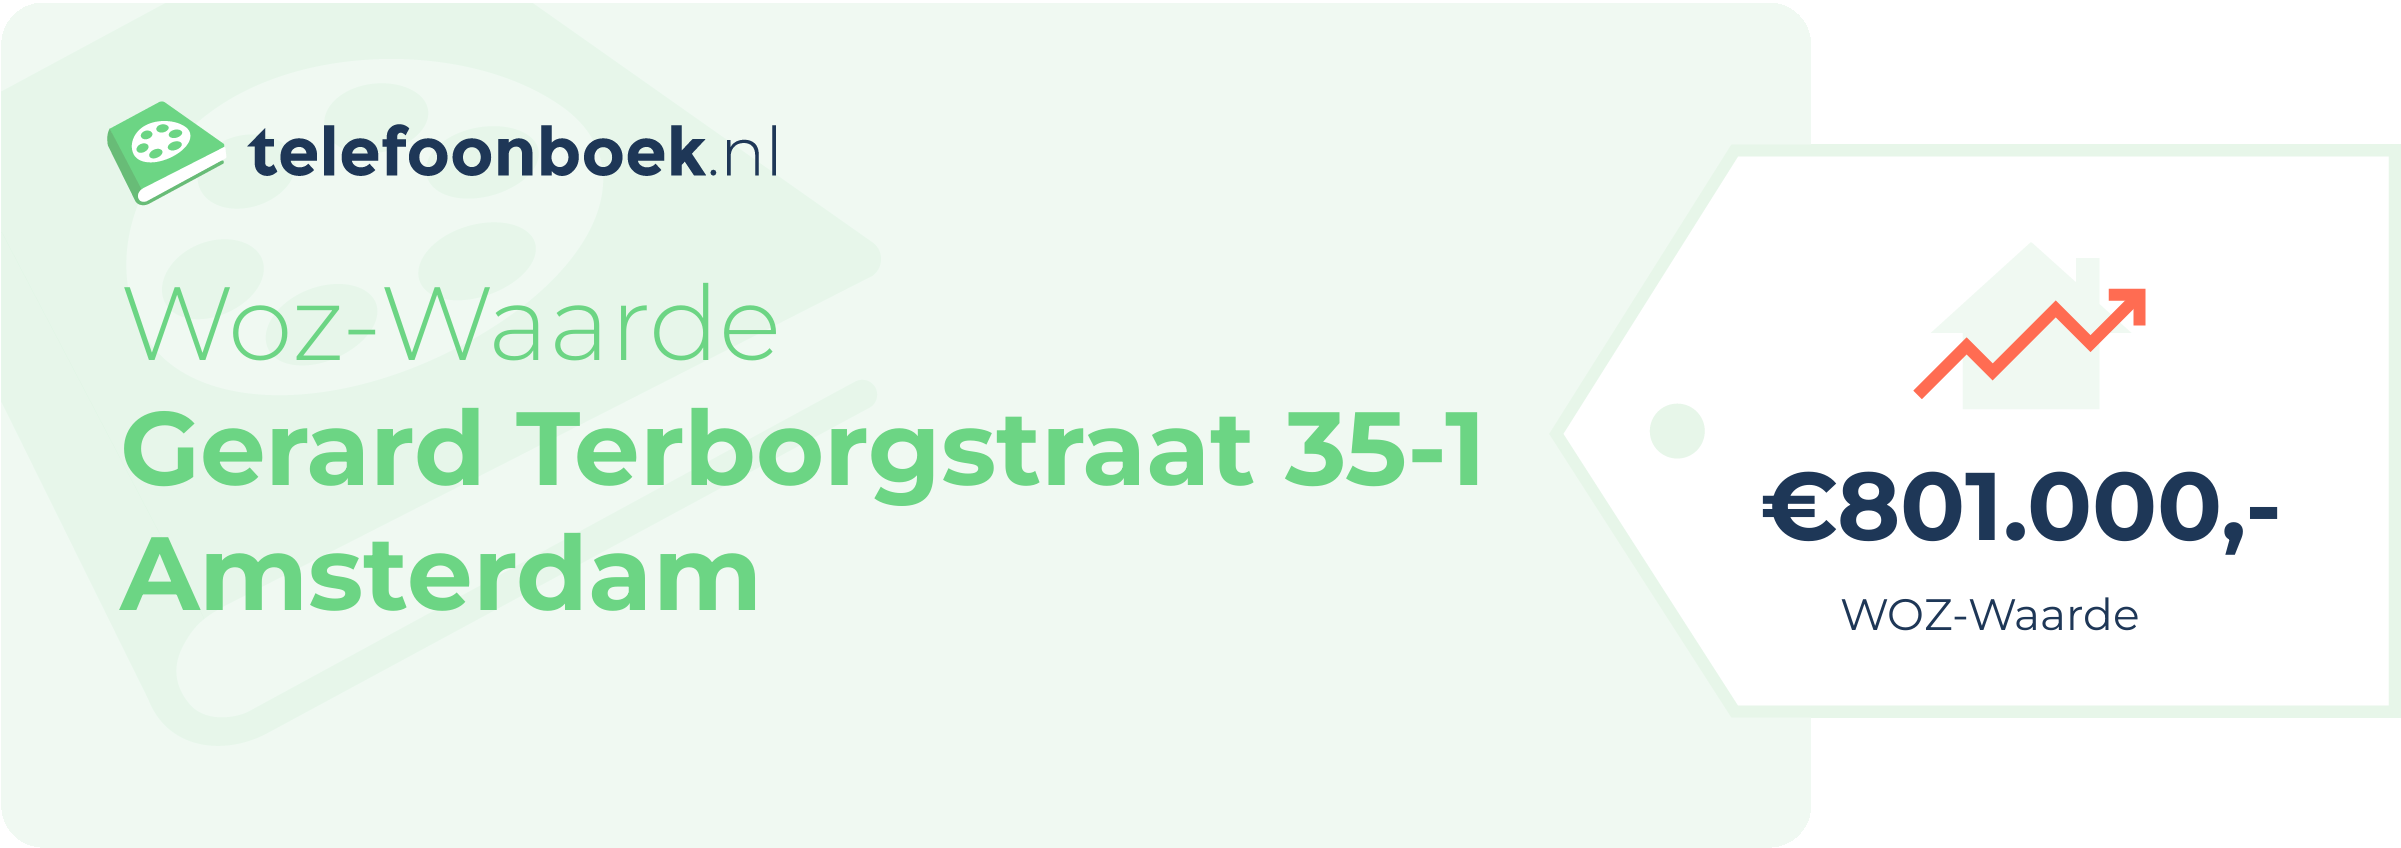 WOZ-waarde Gerard Terborgstraat 35-1 Amsterdam